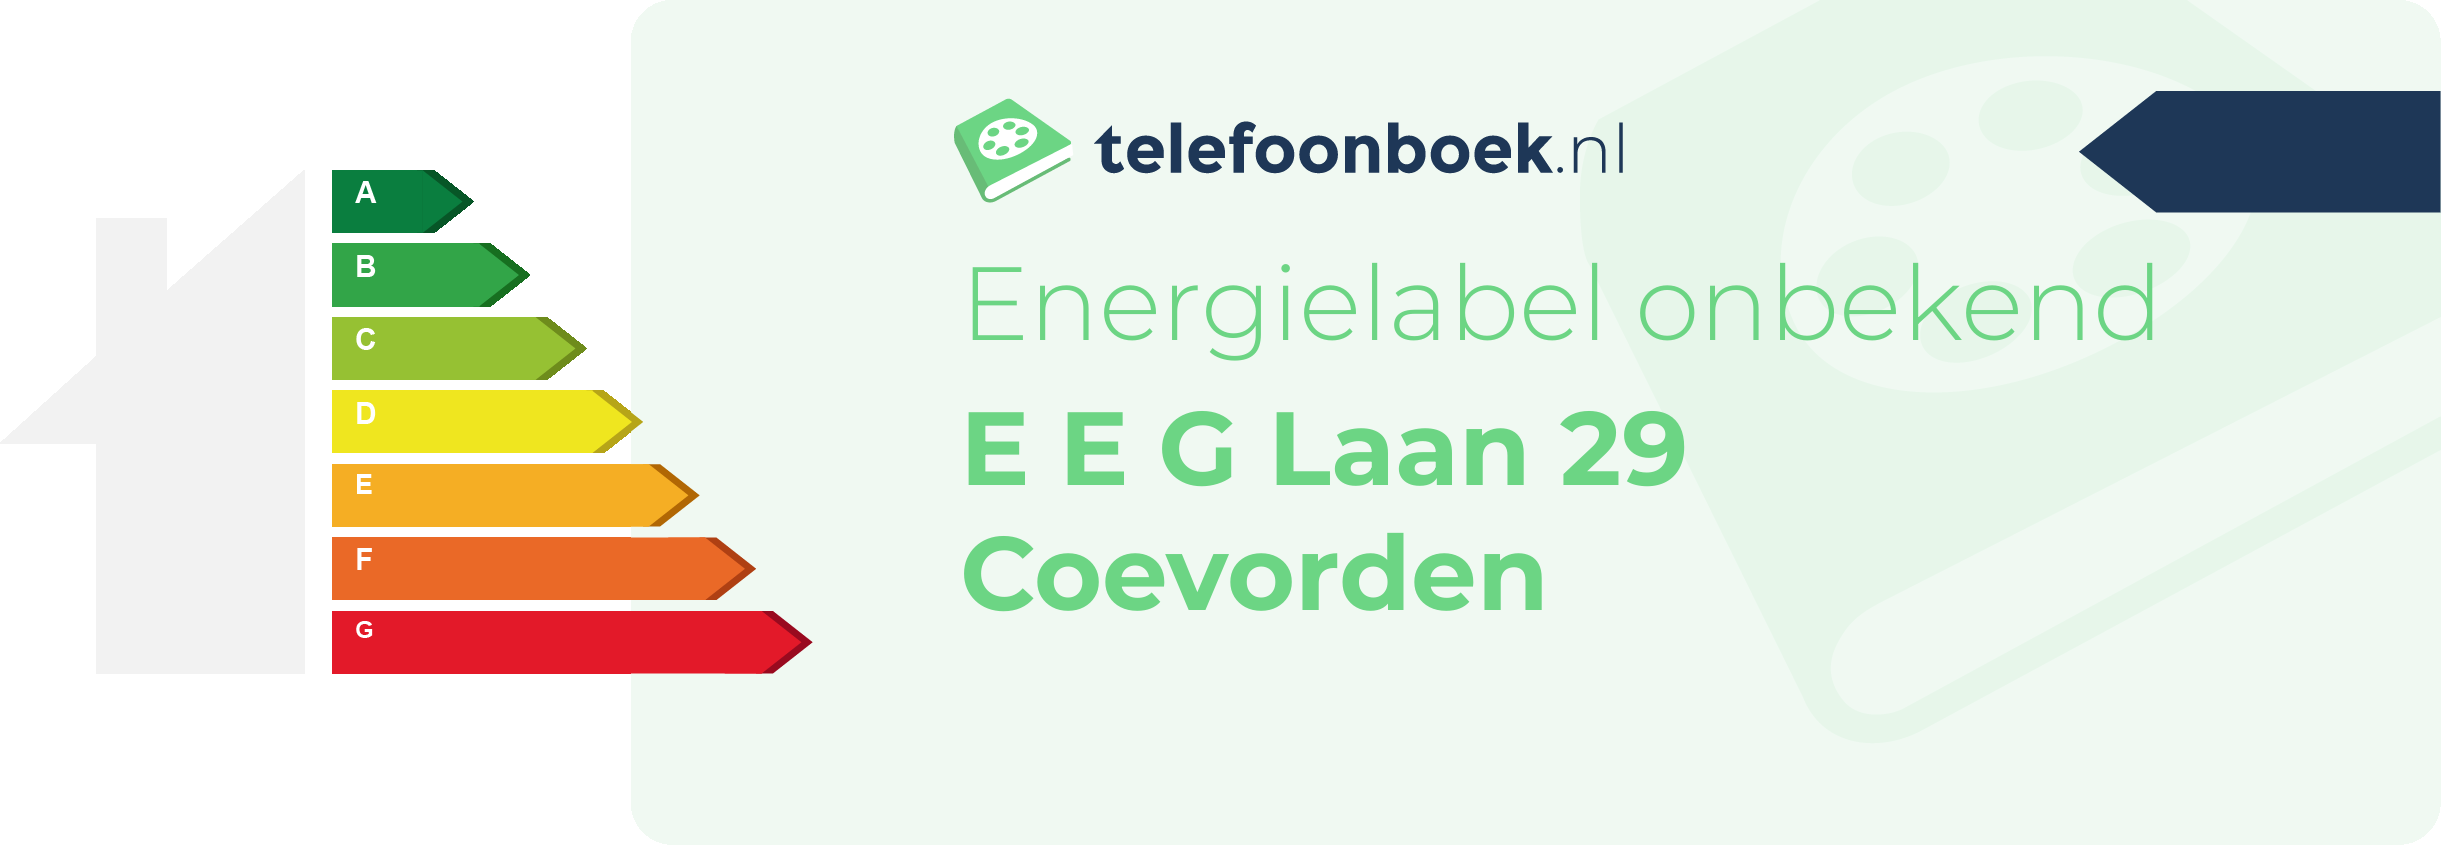 Energielabel E E G Laan 29 Coevorden